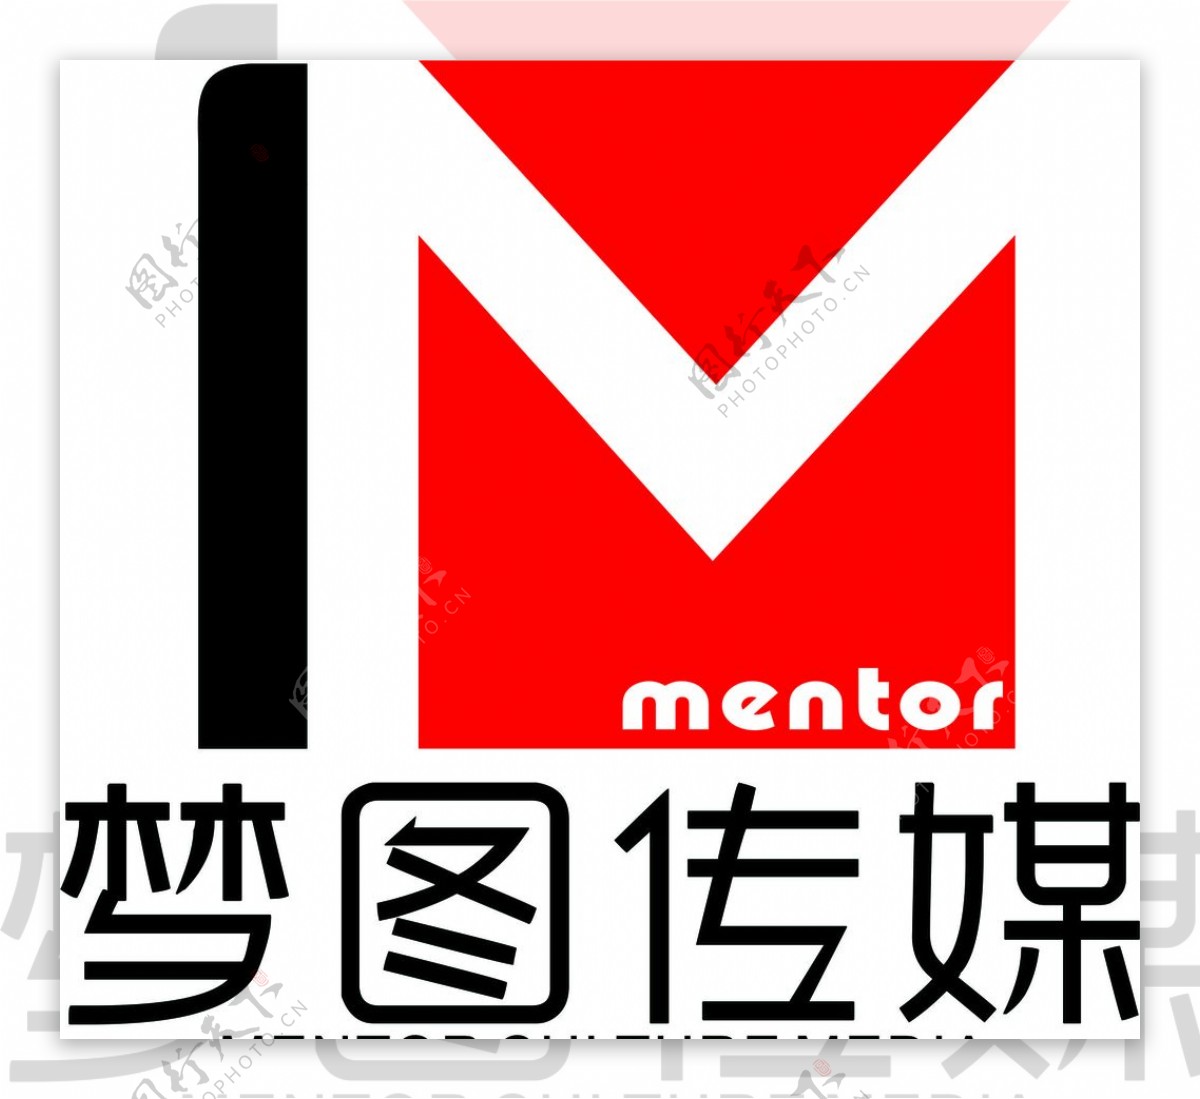 传媒公司logo标识标志